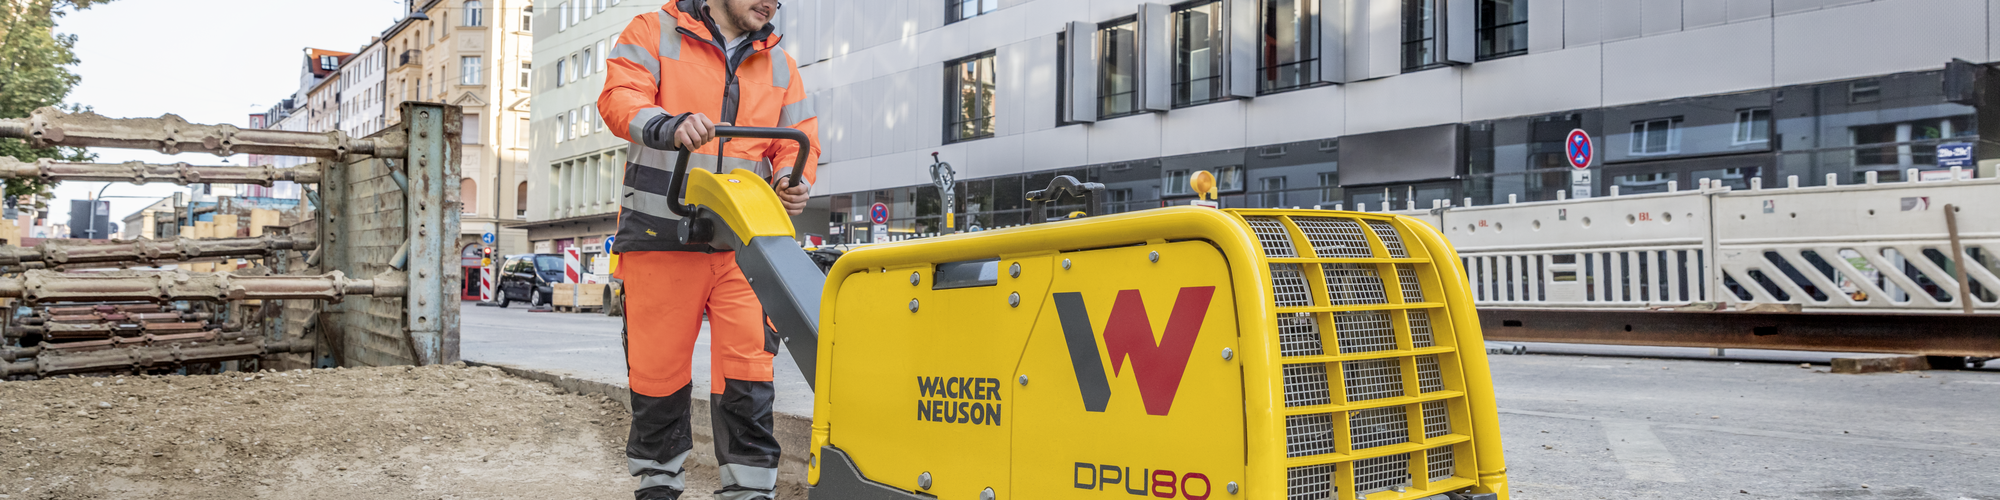 Виброплита Wacker Neuson в действии на стройплощадке в городе.